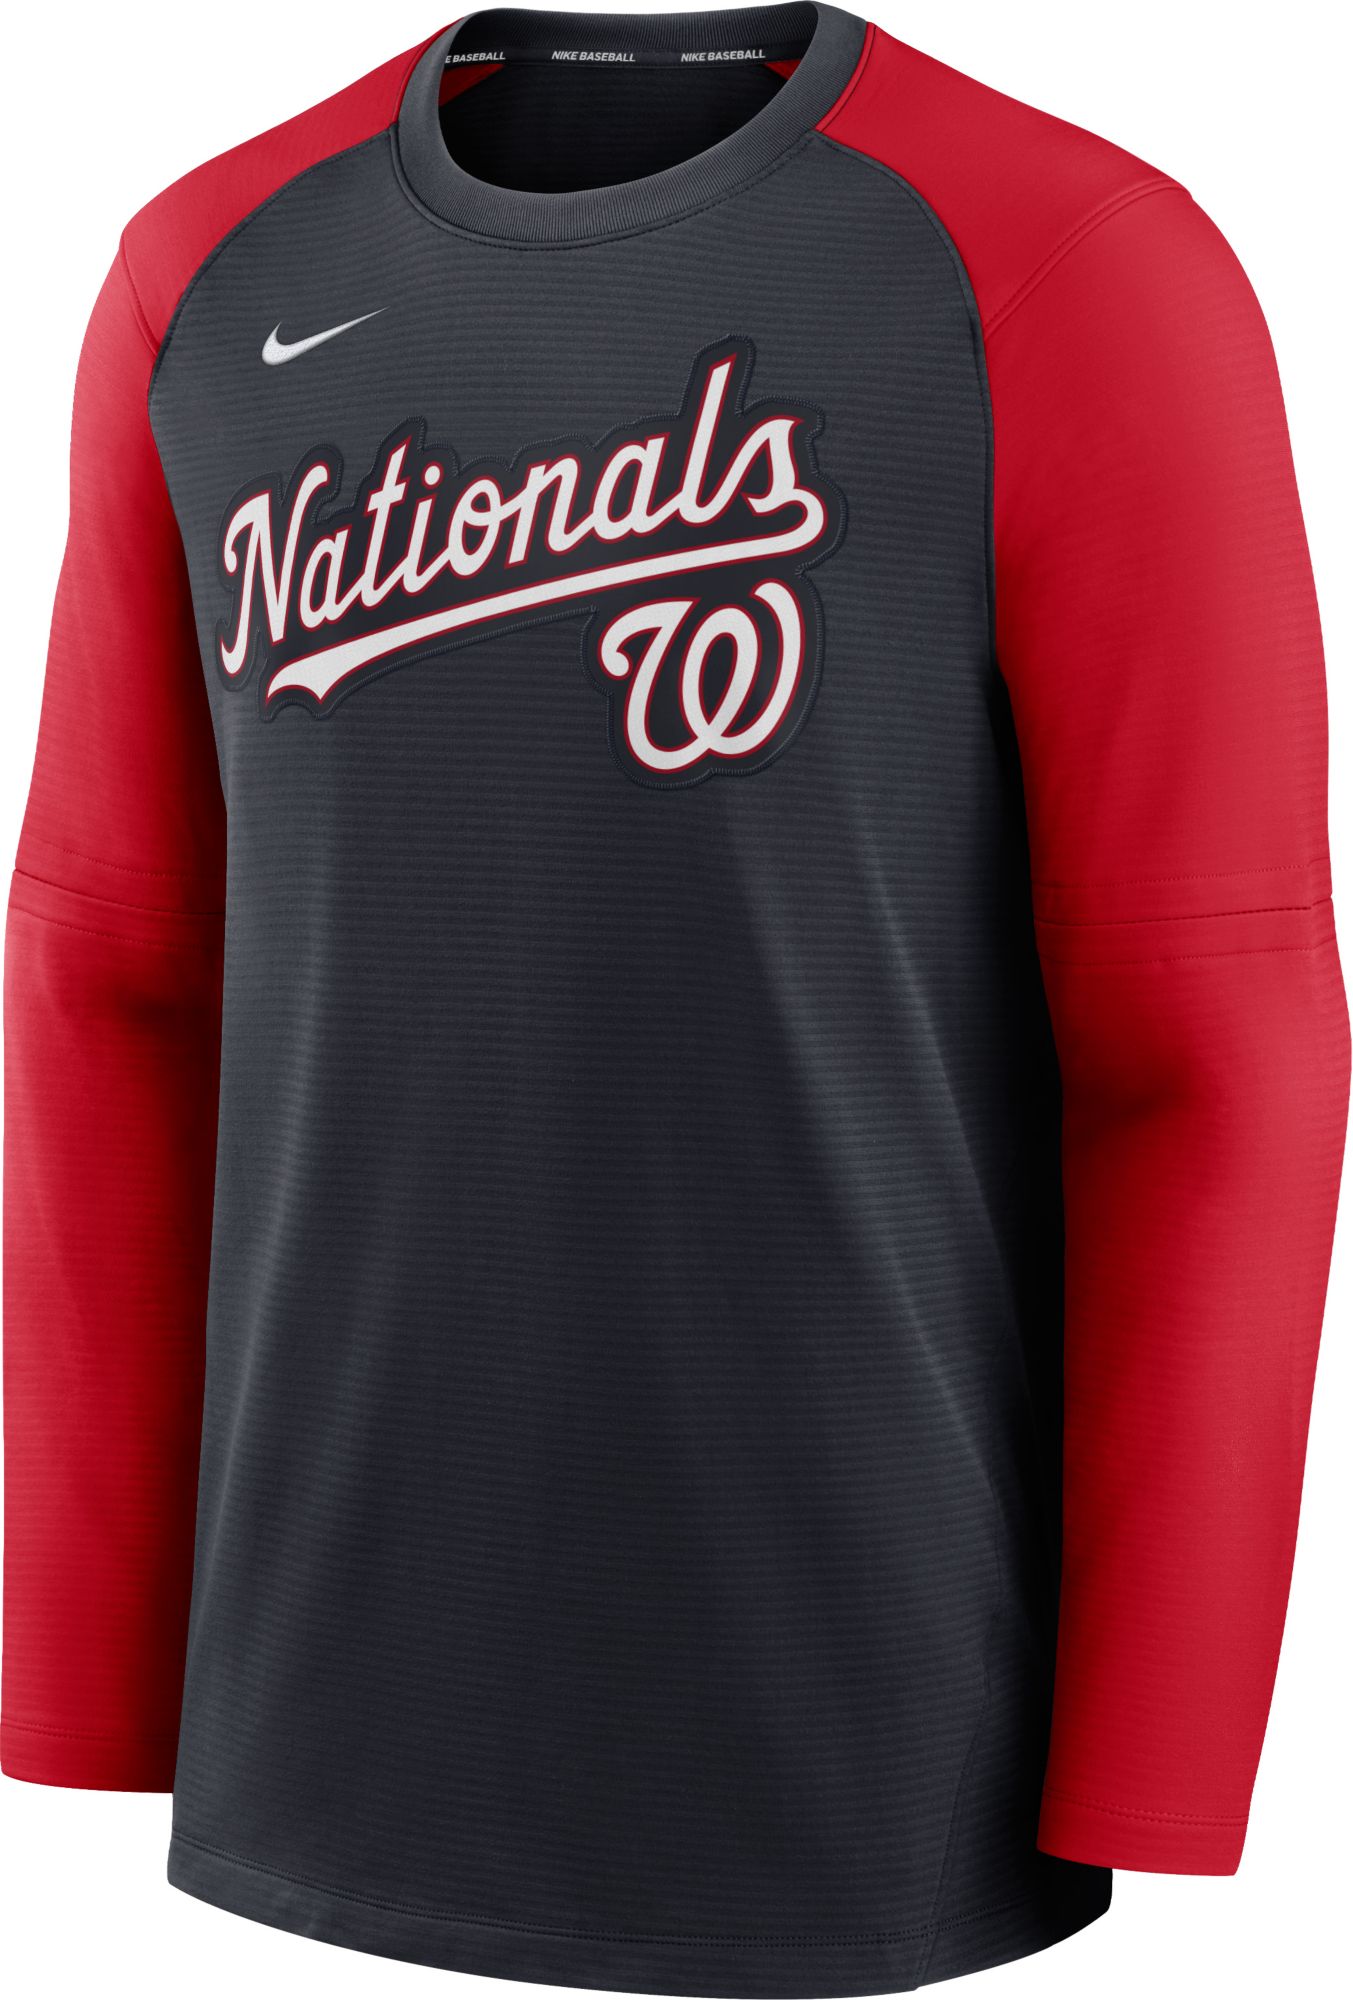 washington nationals tshirt  Washington nationals, Mens tops